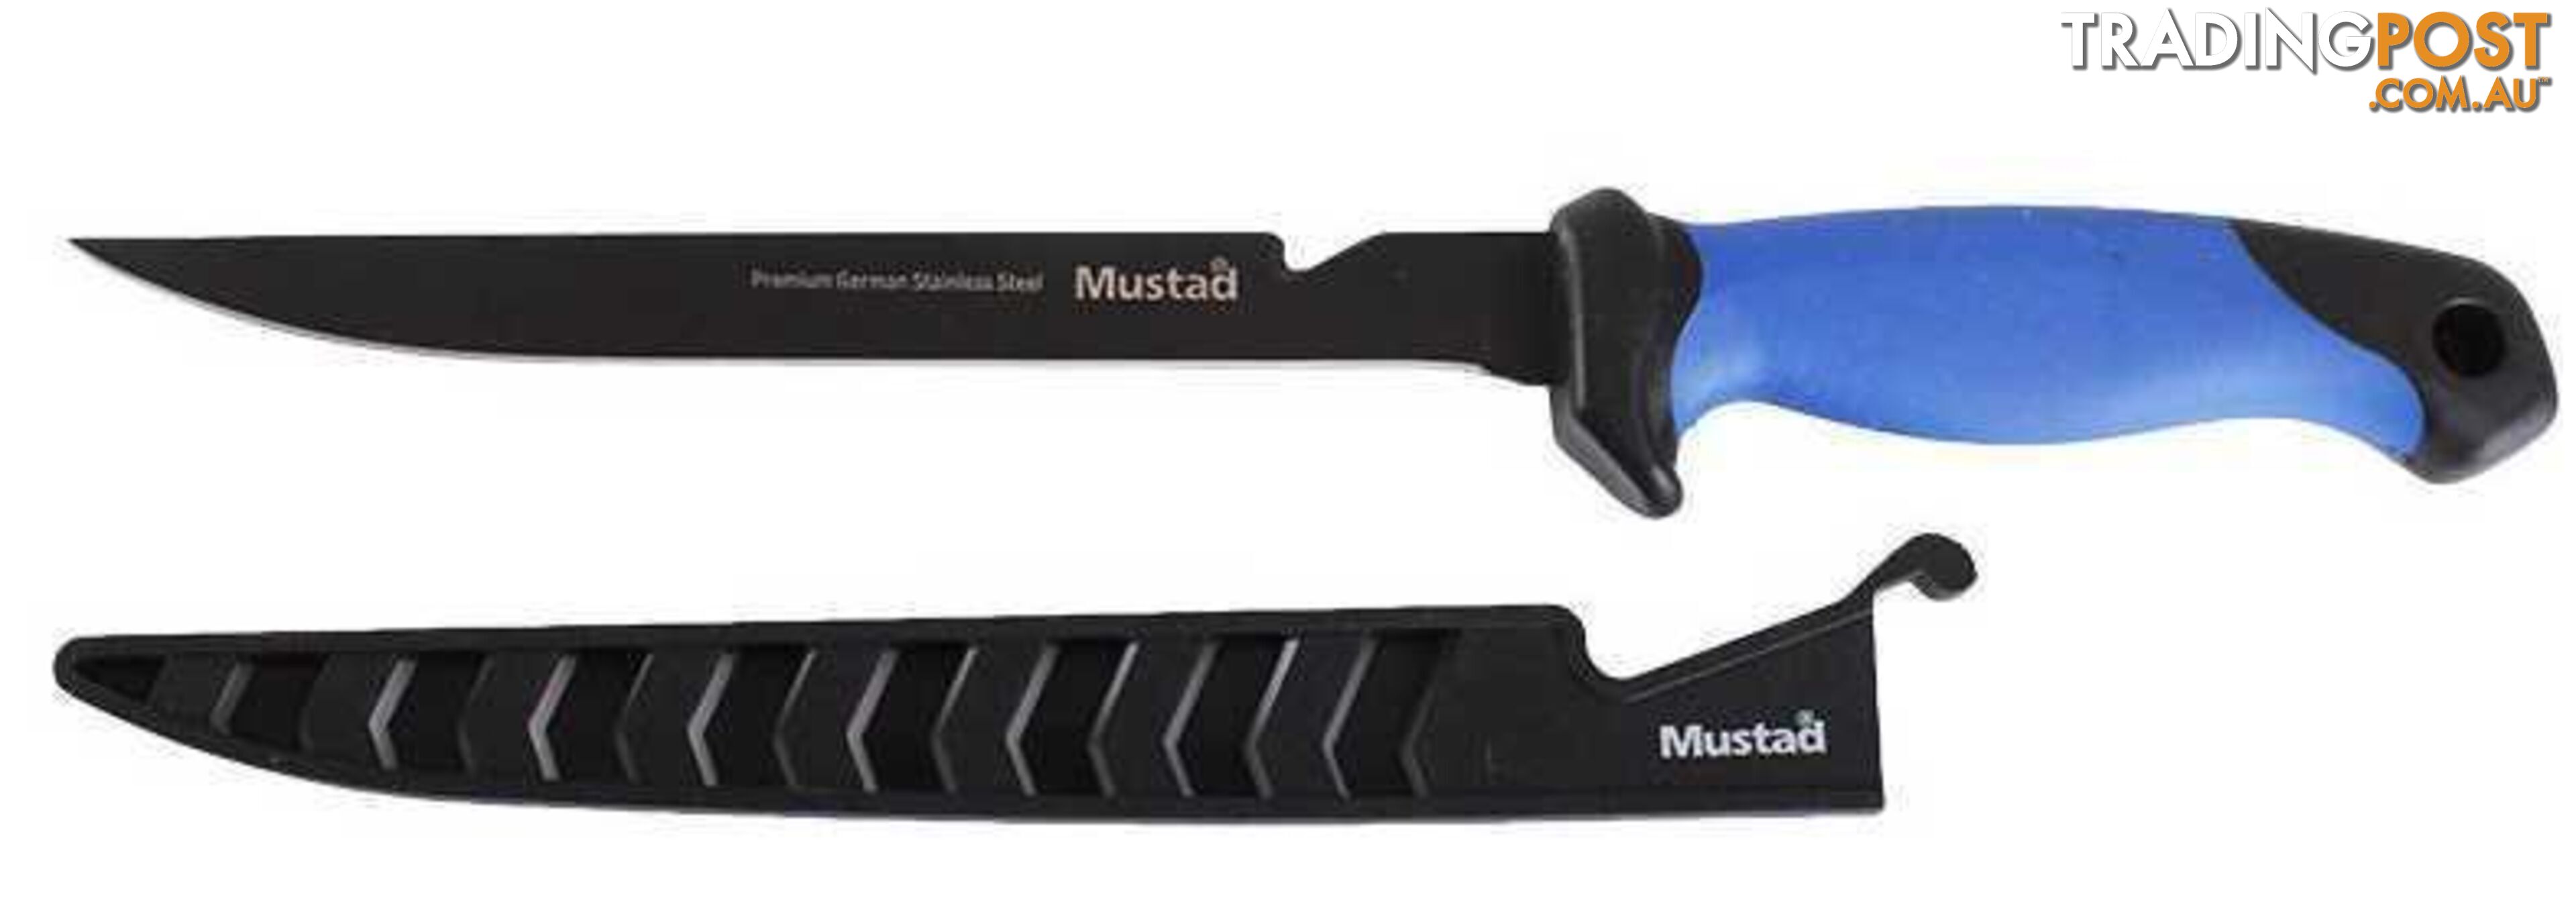 MUSTAD 8" FILLET KNIFE - MUSTAD MT03